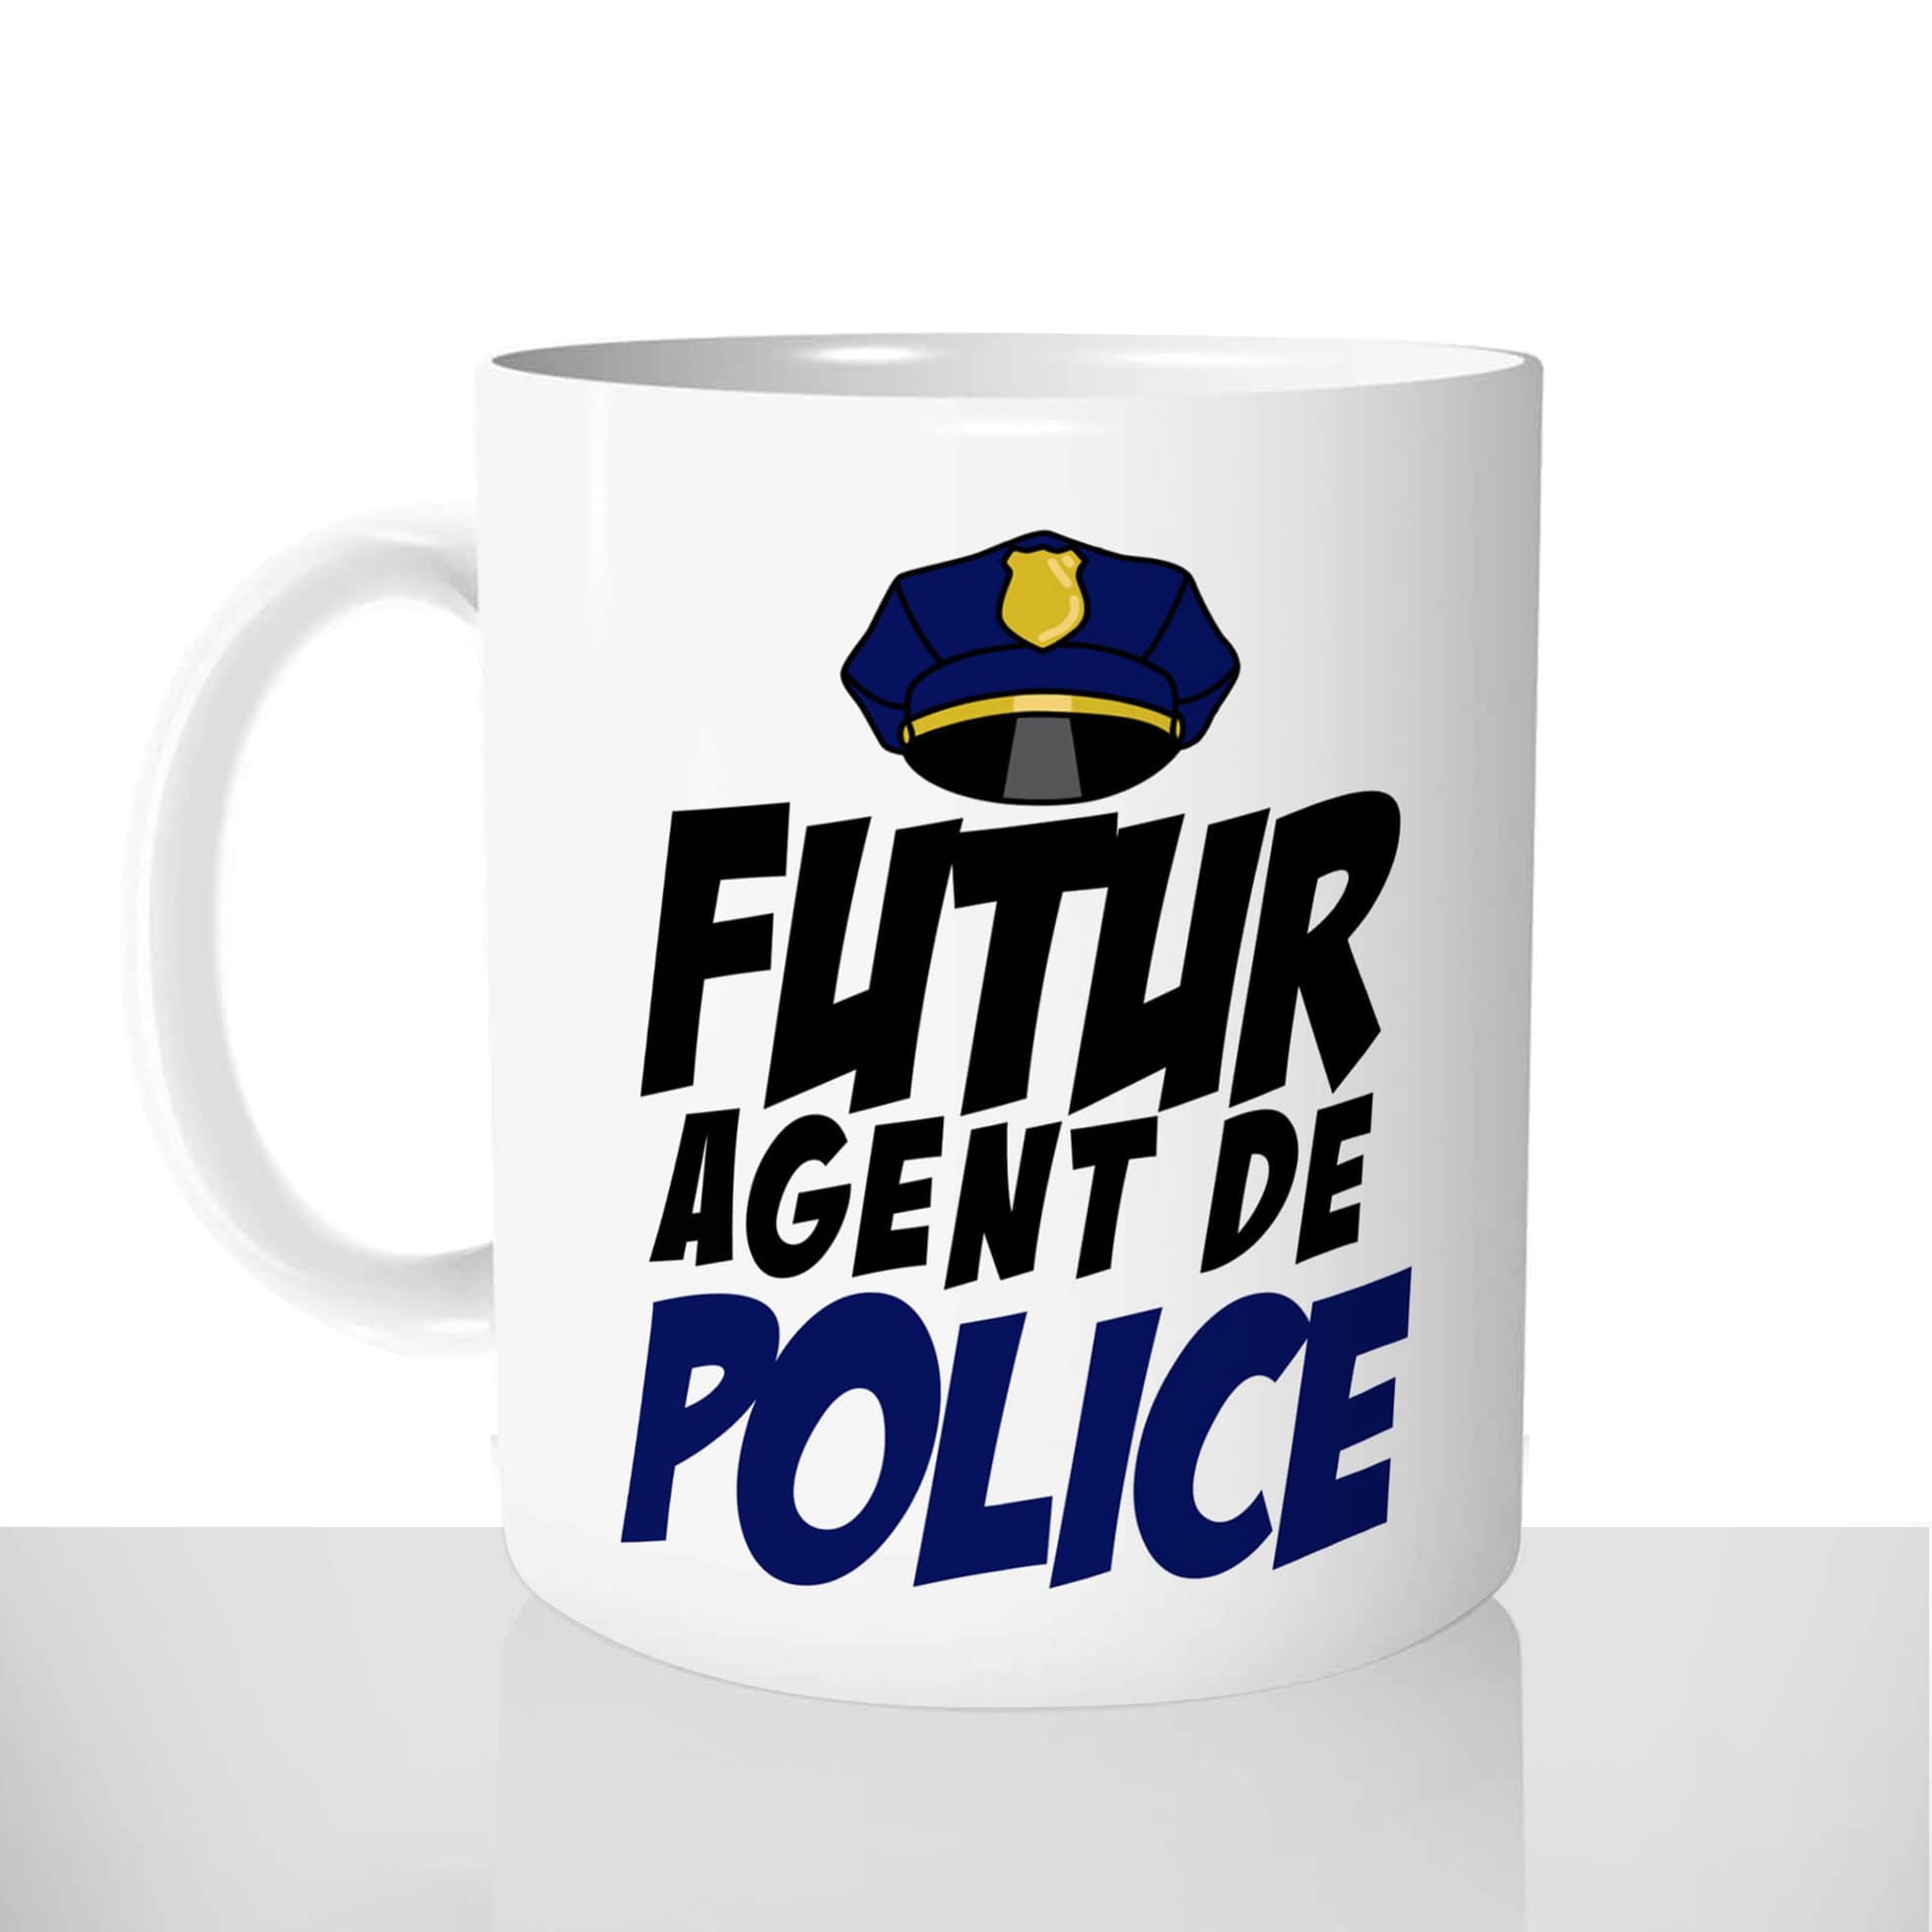 mug classique en céramique 11oz personnalisé personnalisation photo ecole futur agent de police policier personnalisable cadeau